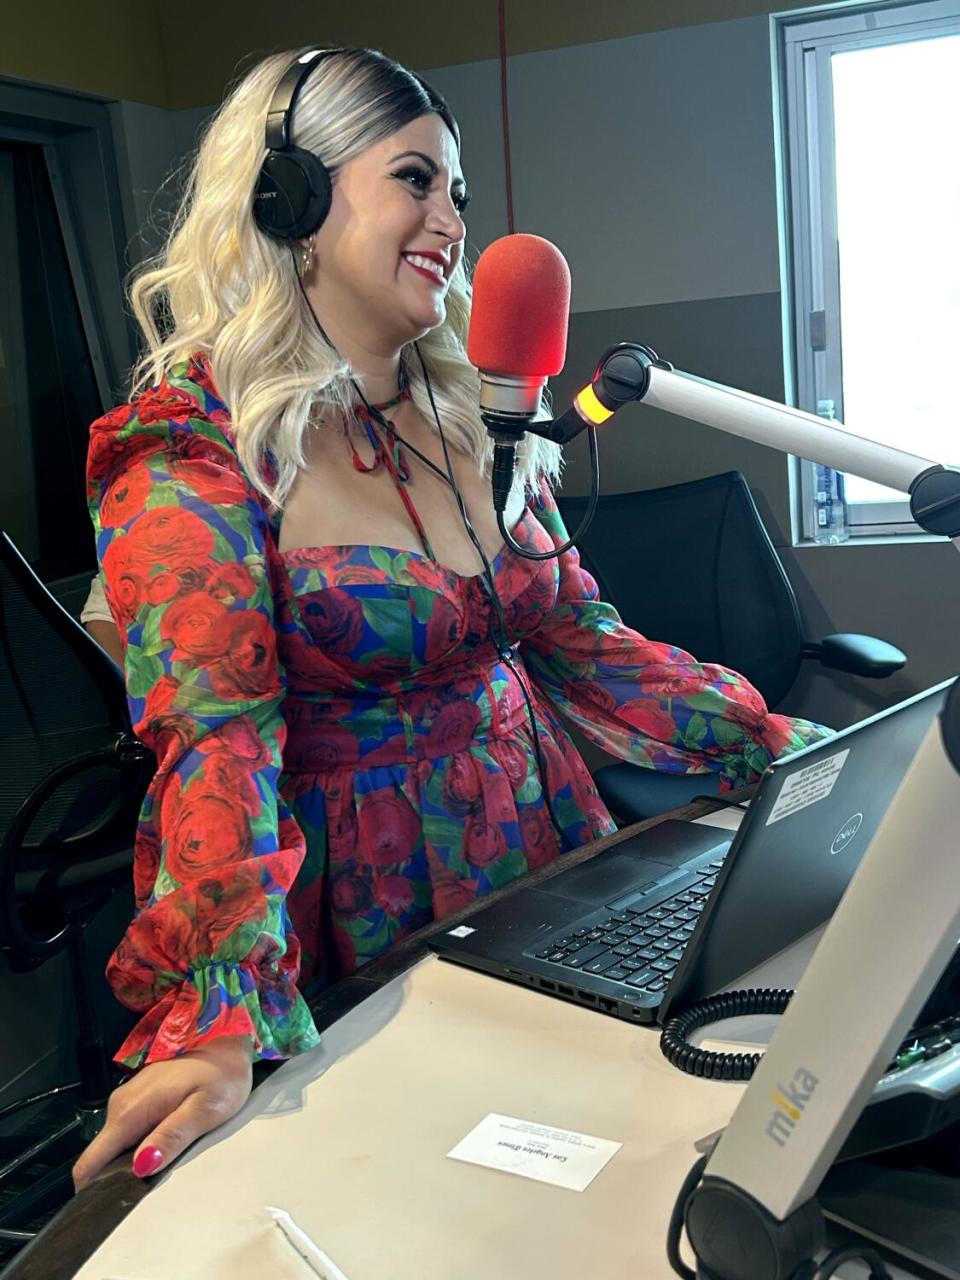 'Levantate' radio show co-host Denise Reyes